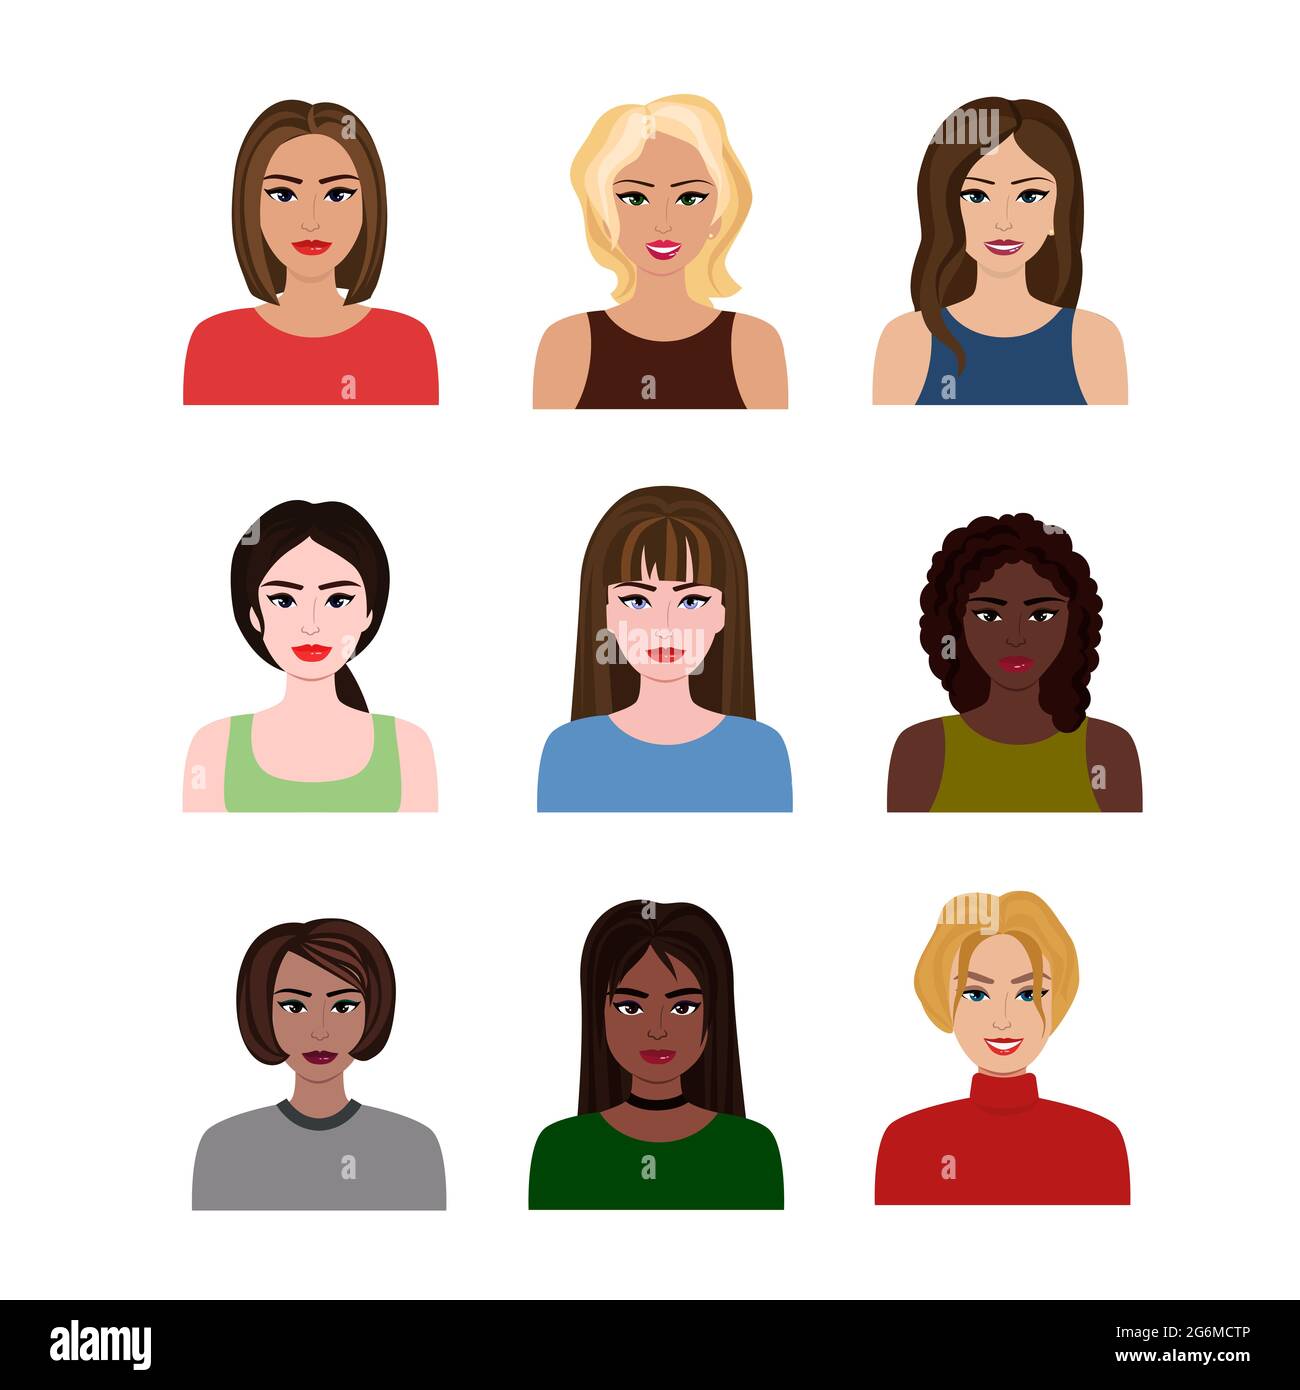 Vektor-Illustrationen von schönen jungen Mädchen und Frauen verschiedenen Nationen mit verschiedenen Frisuren. Weibliche Avatare im flachen Cartoon-Stil. Stock Vektor